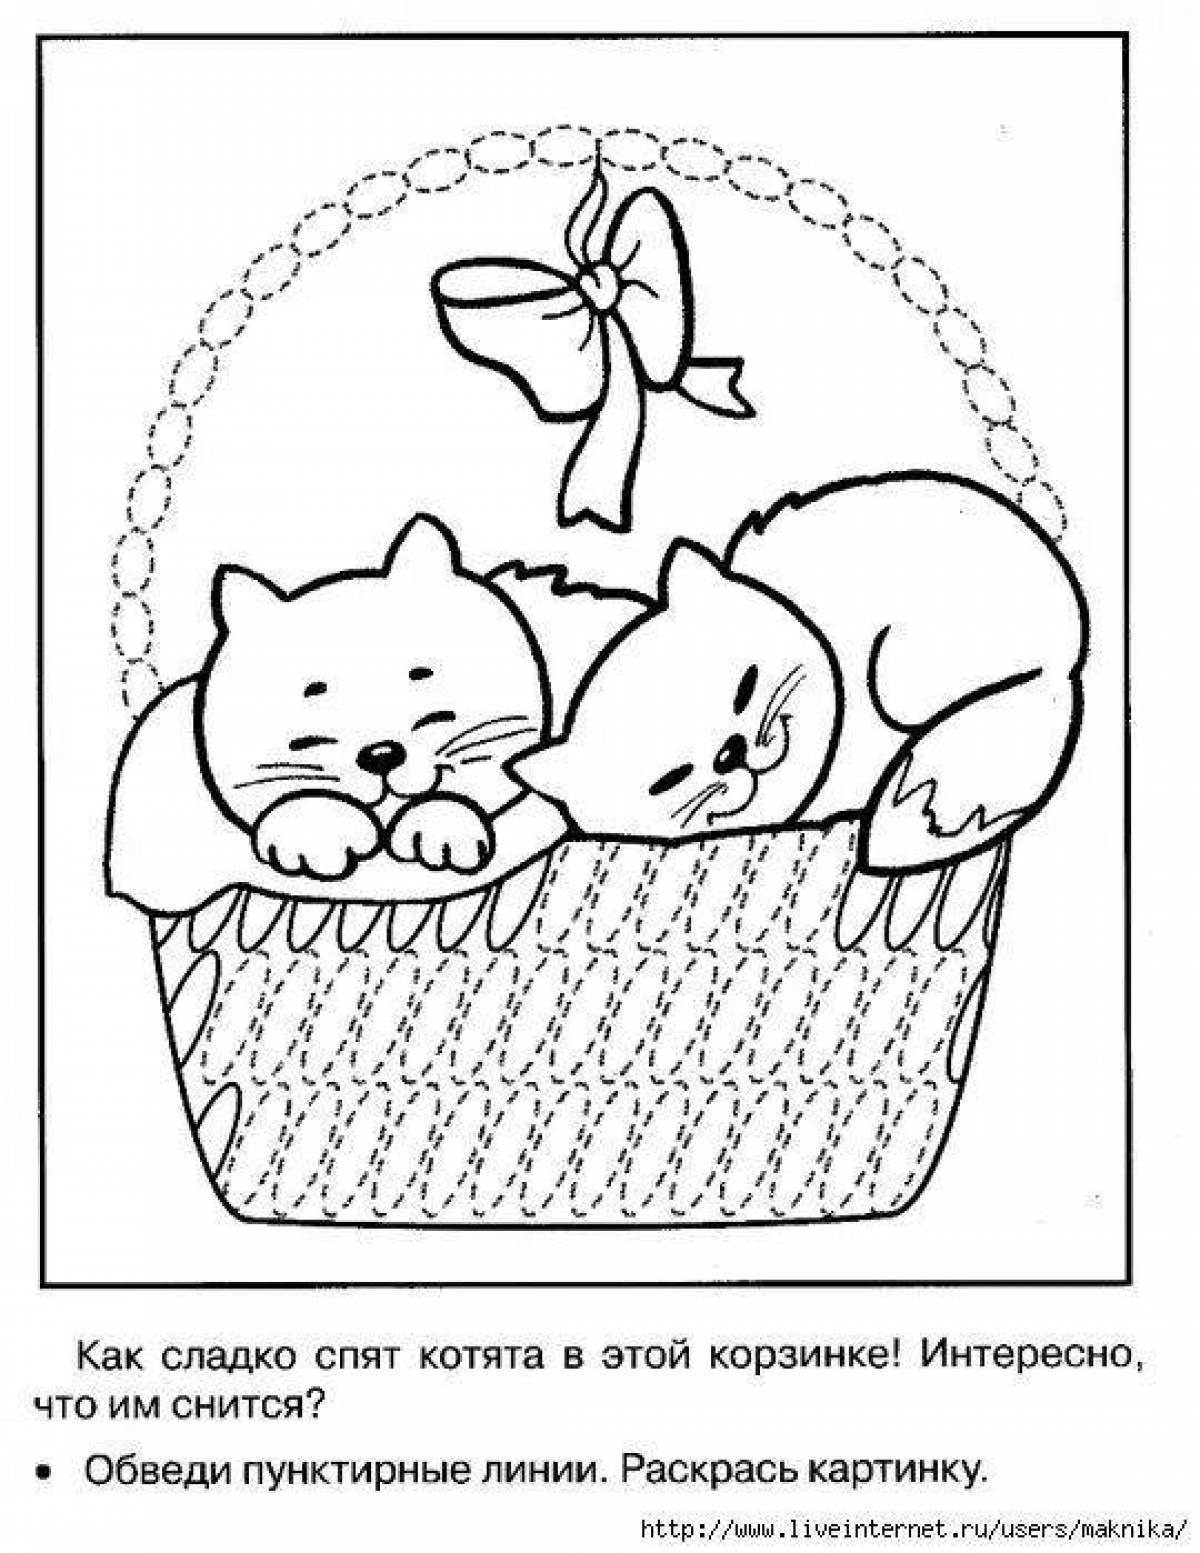 Happy kittens in a basket